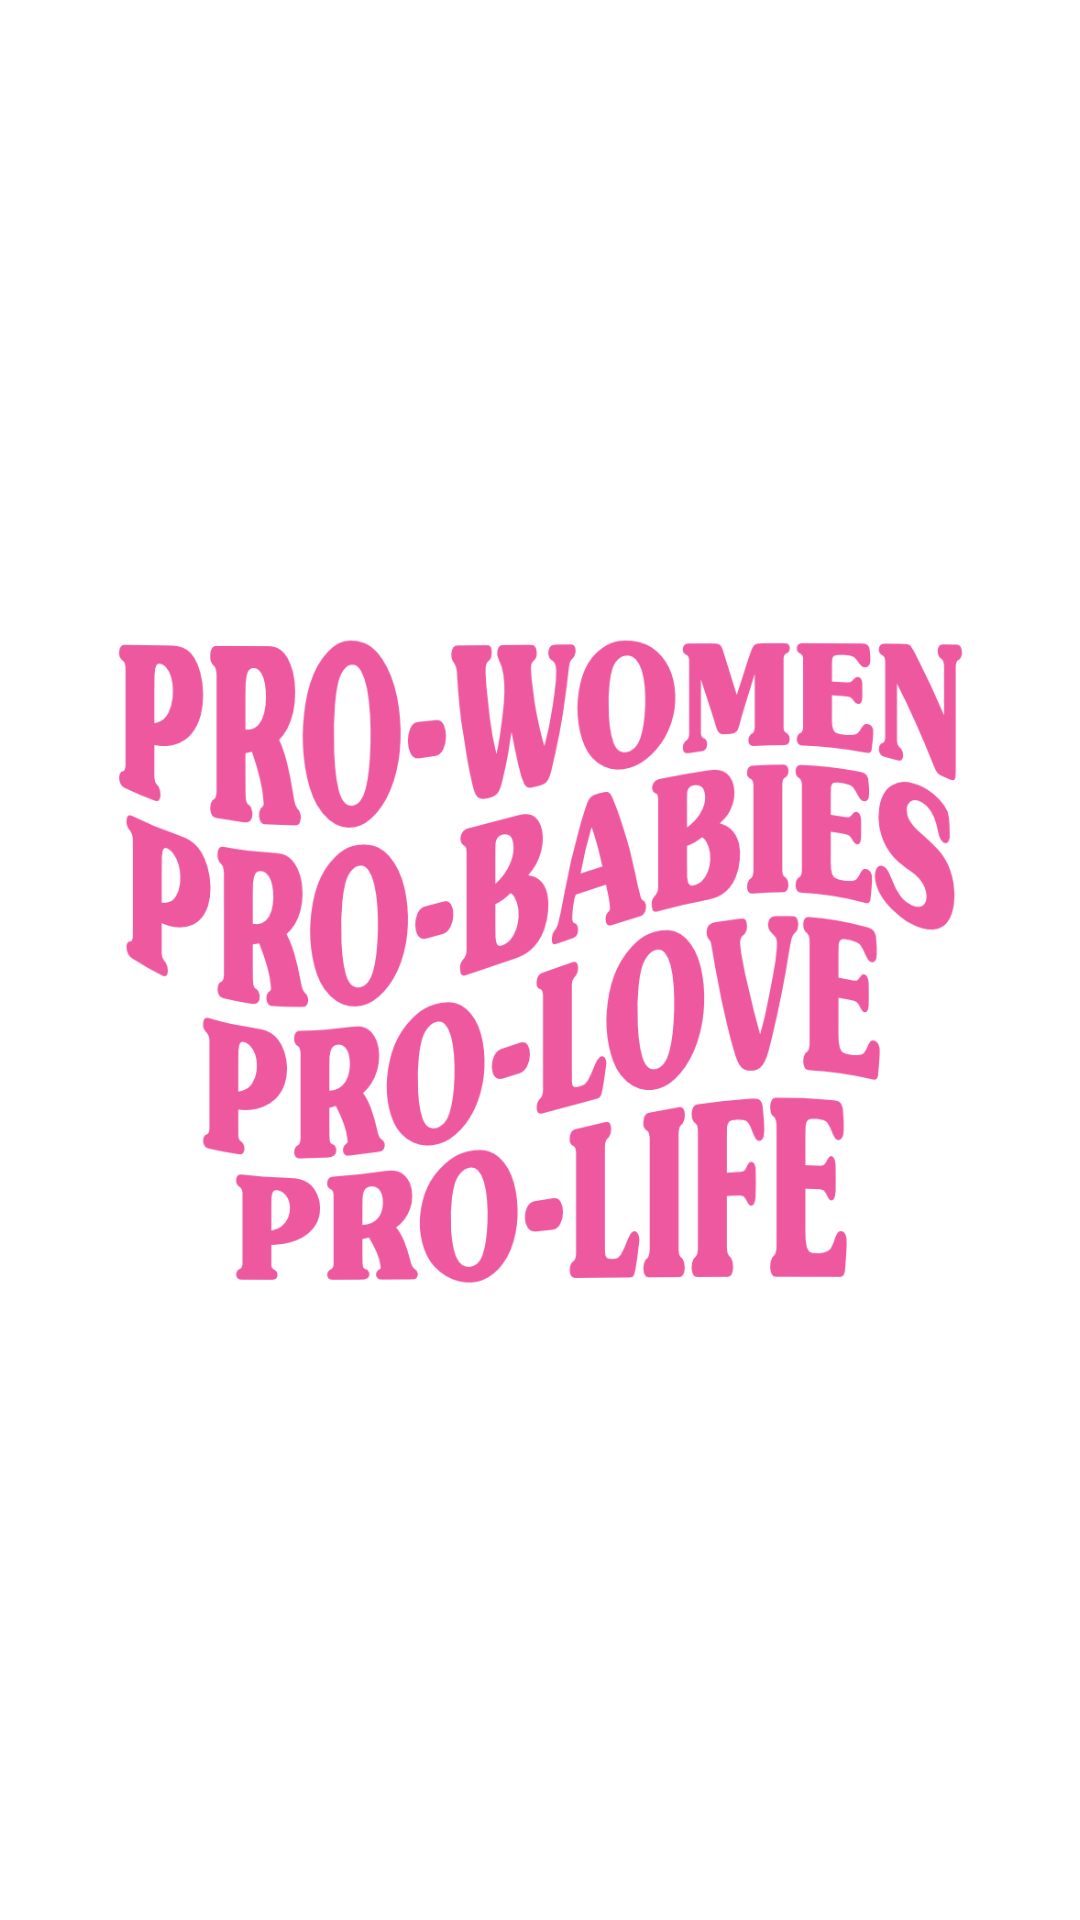 Pro-Women, Pro-Babies Sticker